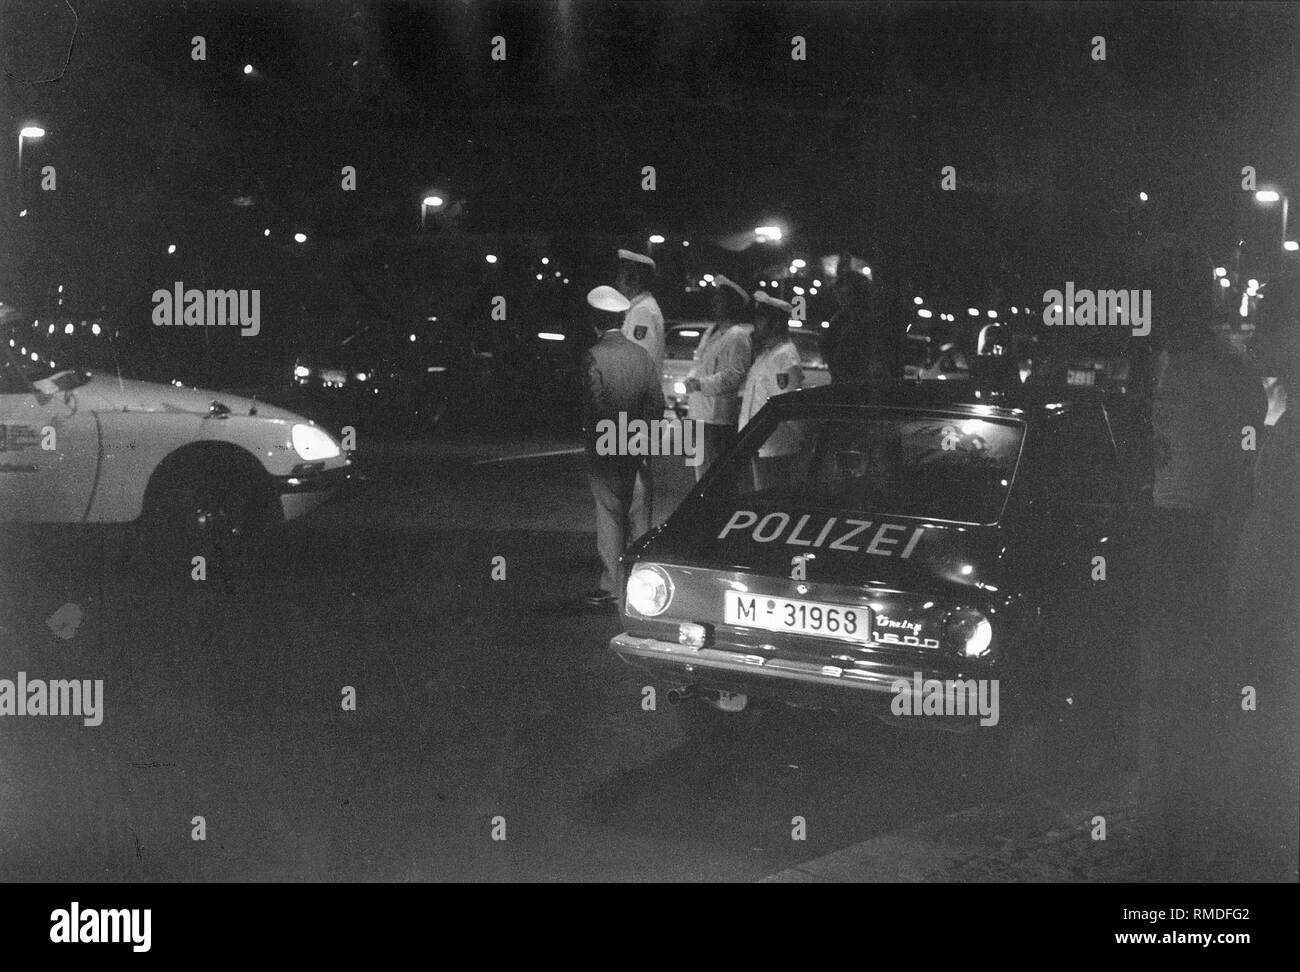 Jeux olympiques, Jeux Olympiques 1972 à Munich : Barrage de la police le soir de l'attaque terroriste sur une route d'accès au Village Olympique, le 5 septembre. Banque D'Images